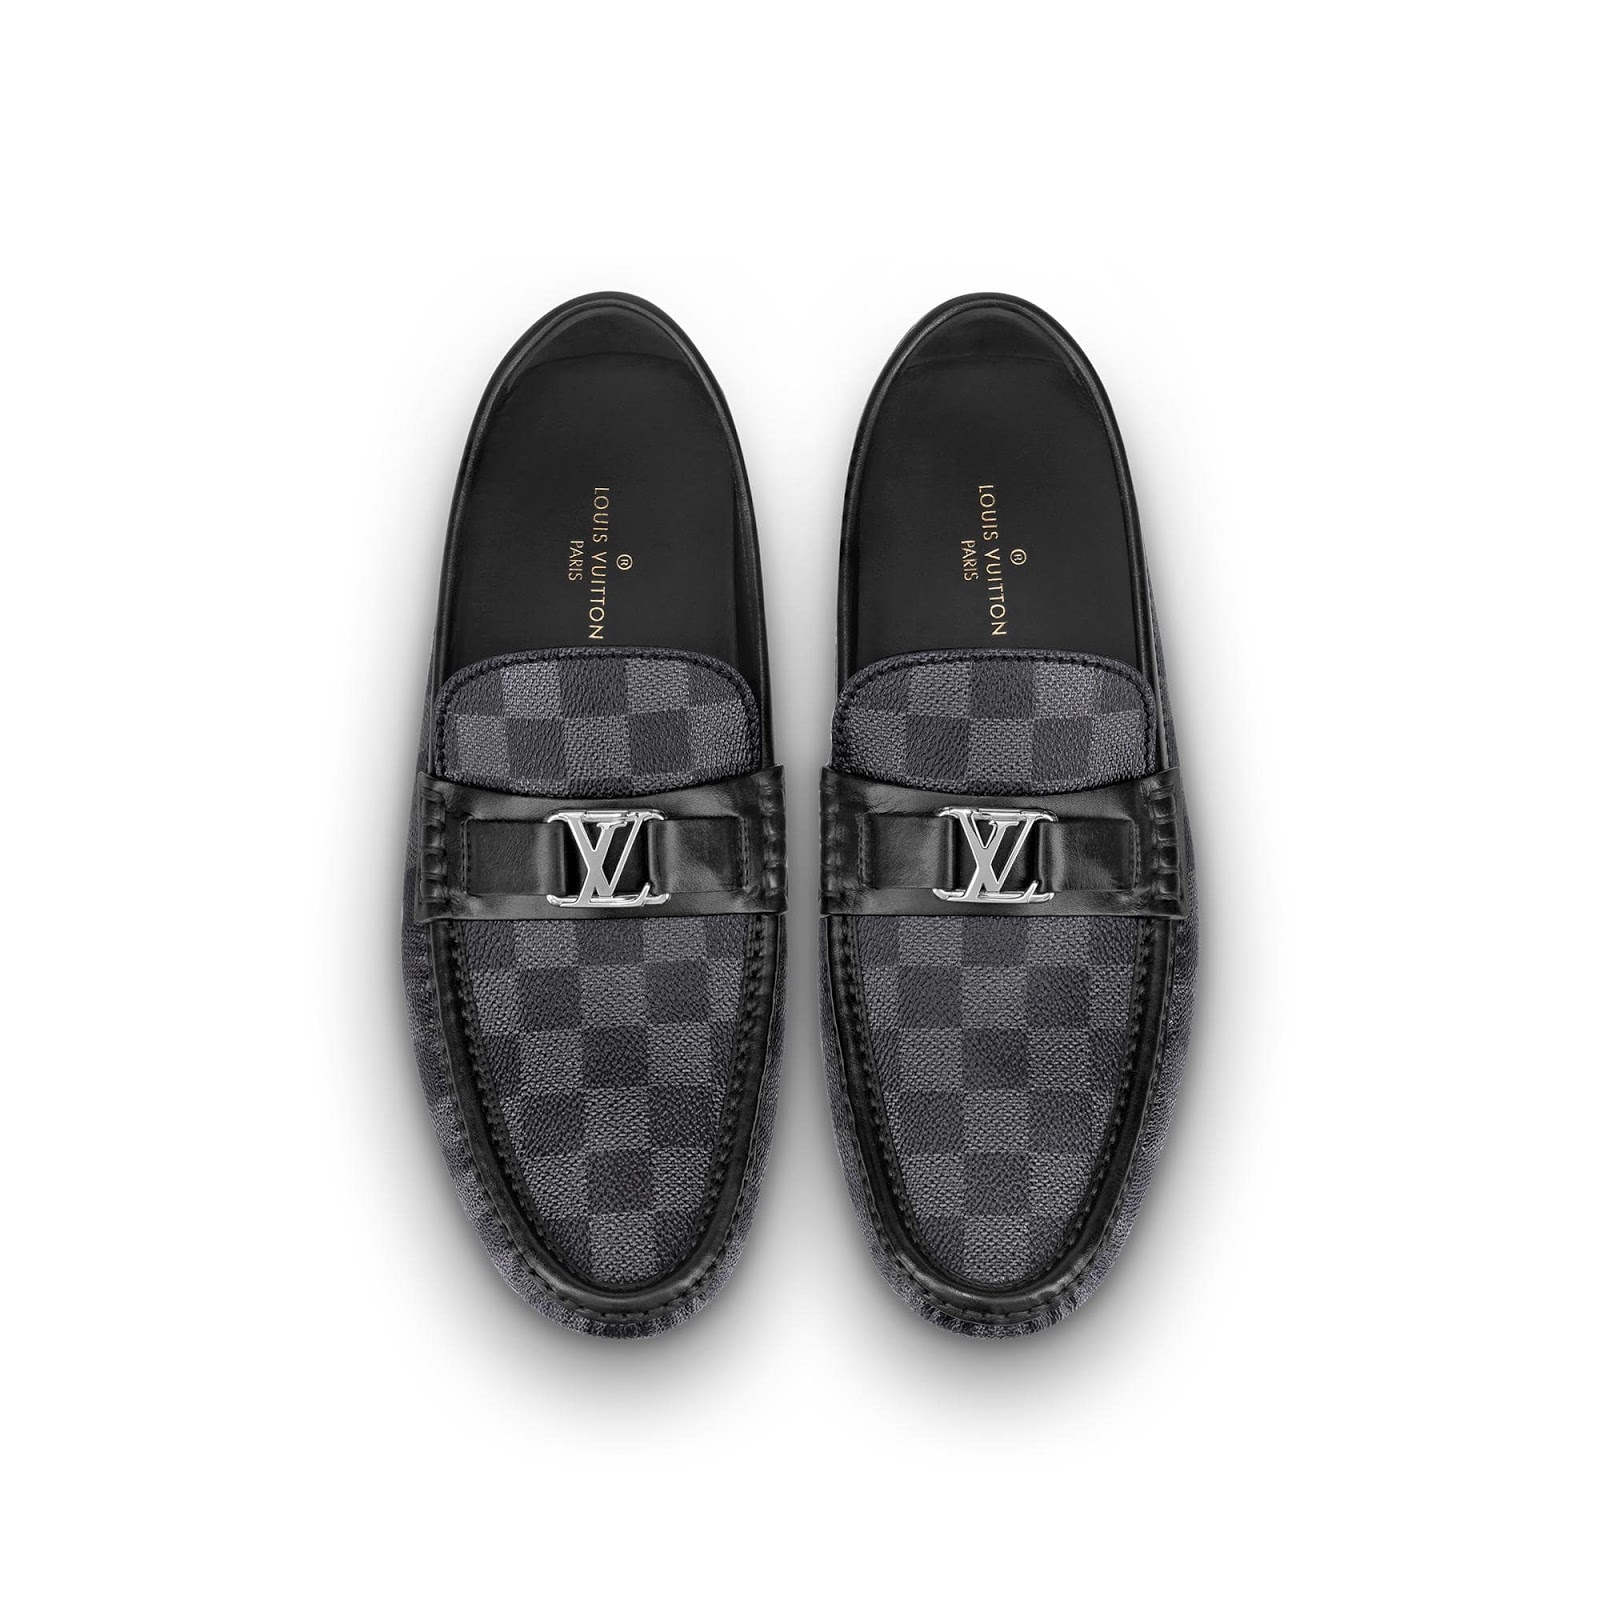 Điểm danh 6 mẫu giày Louis Vuitton nam chính hãng đang được bán tại Việt Nam   HOANG NGUYEN STORE